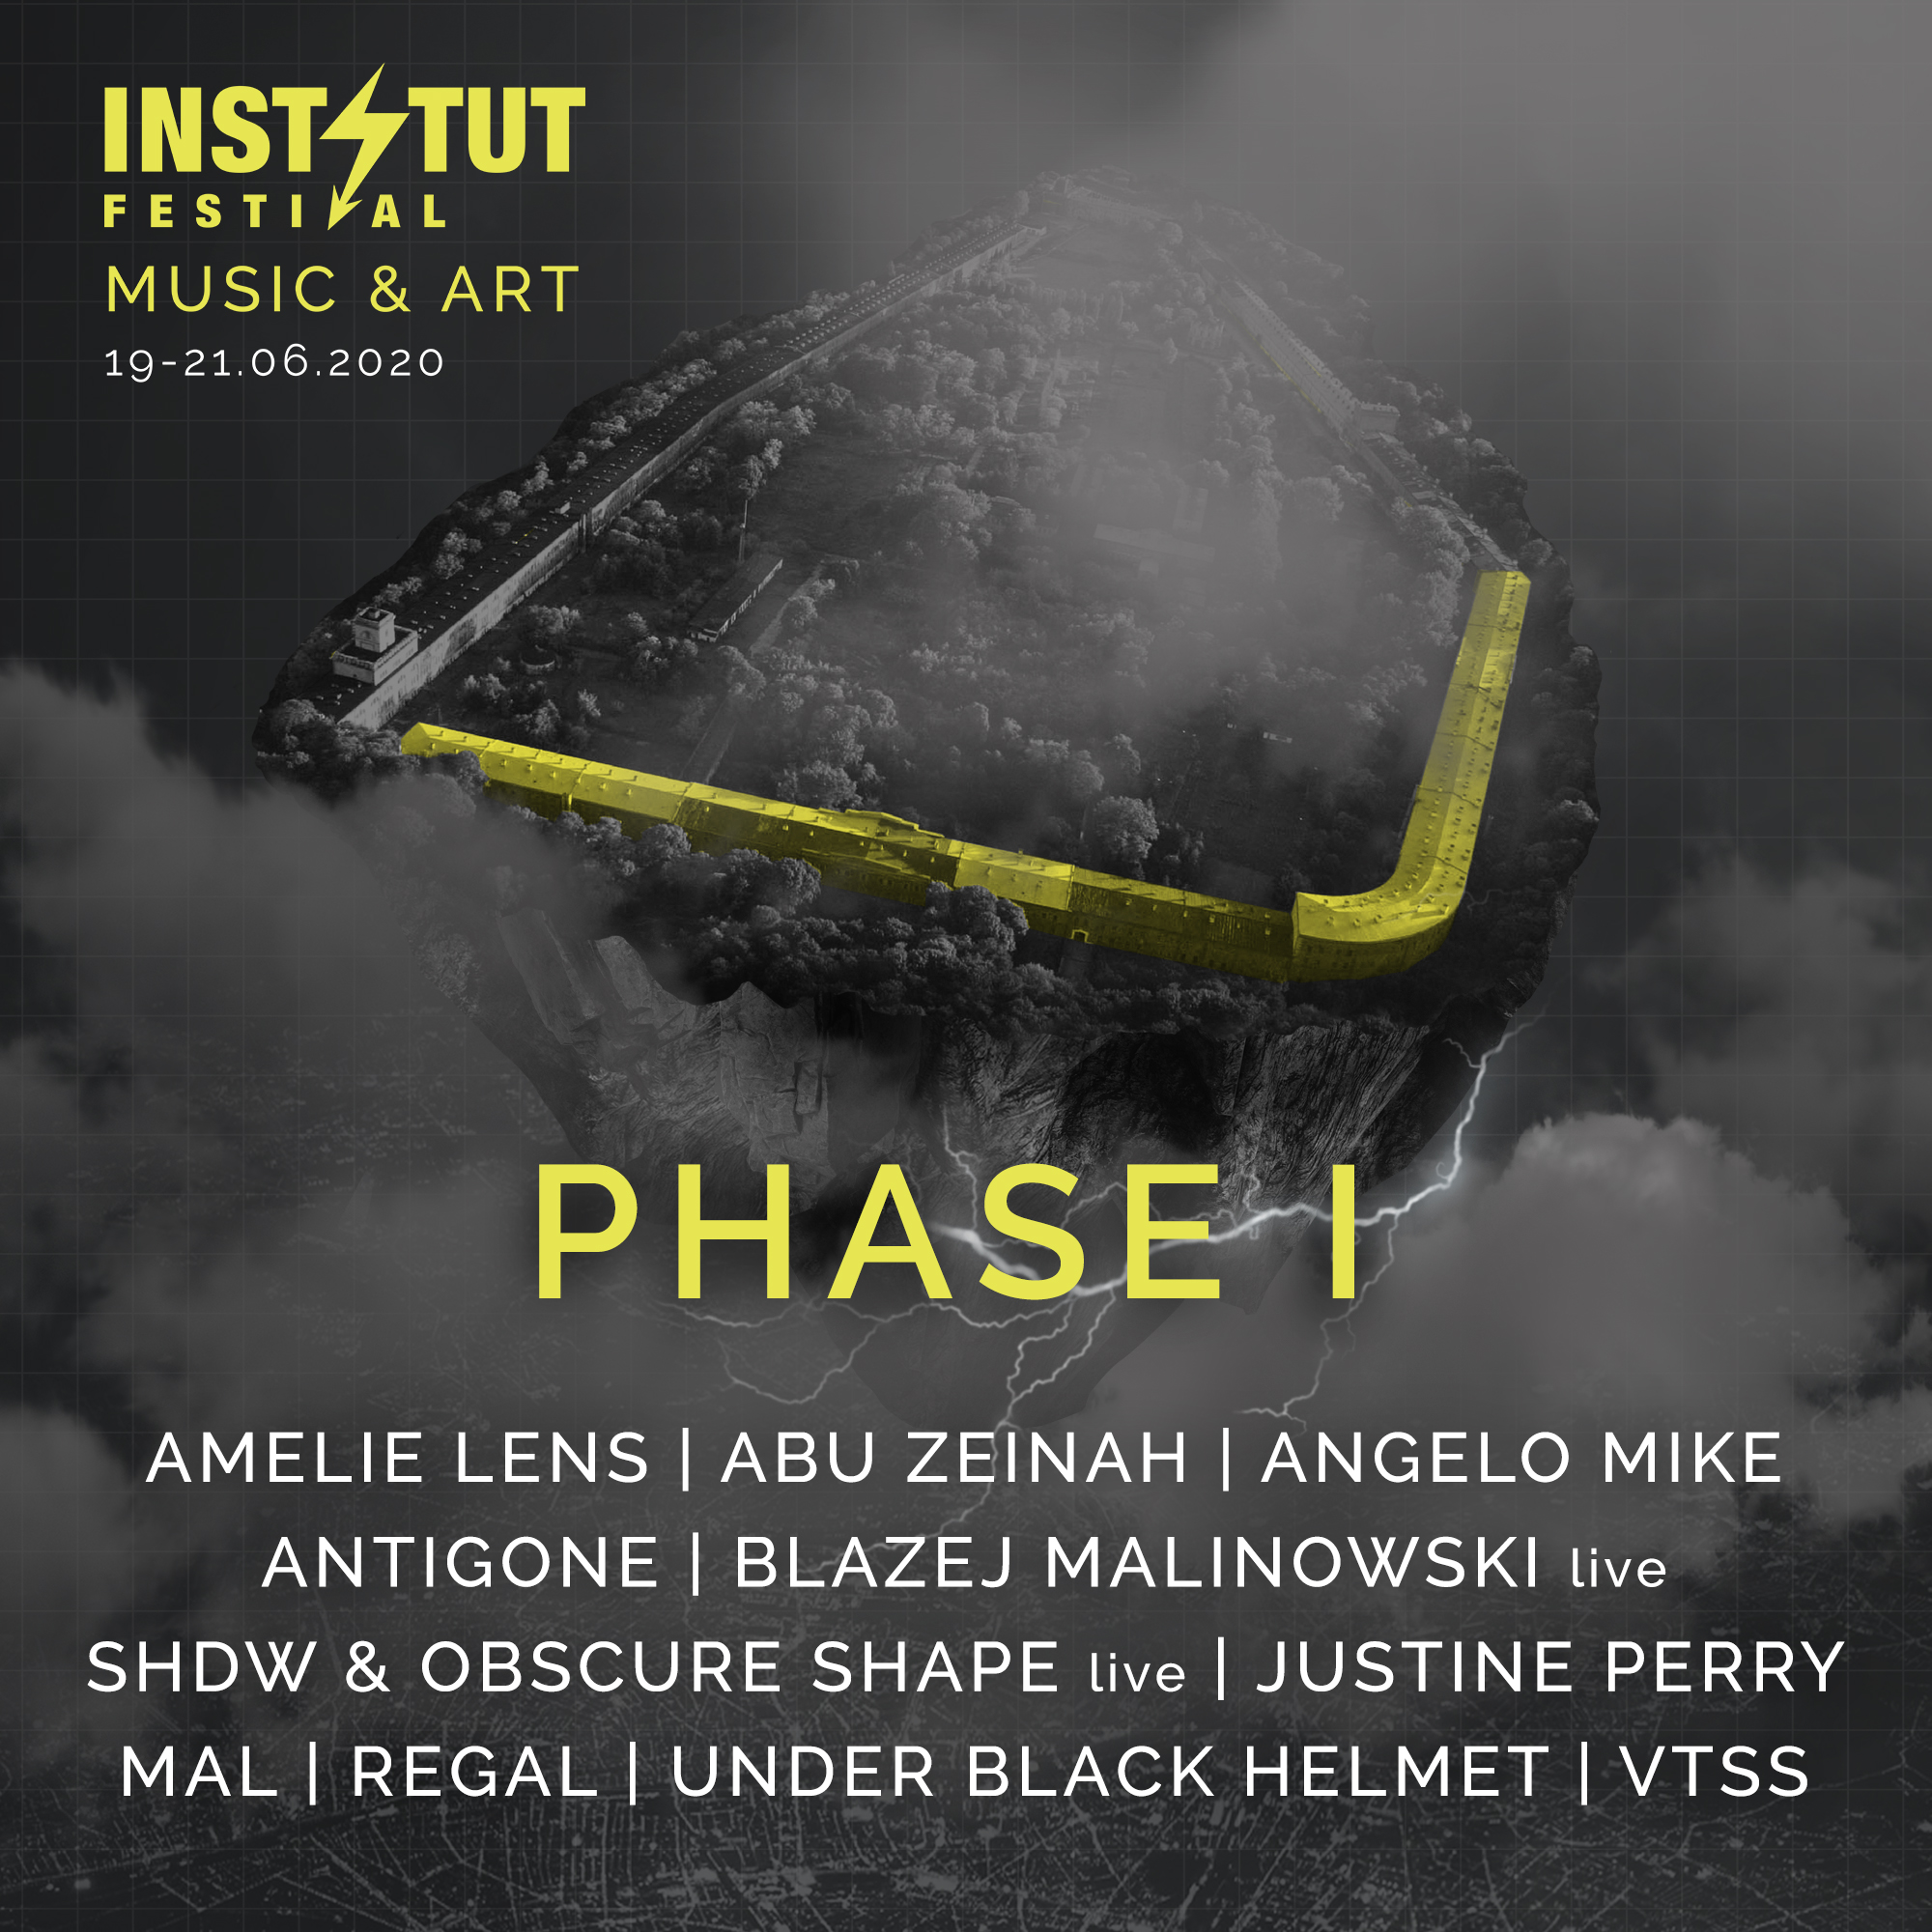 Phase 1 announcement Instytut Festival Music & Art ogłosił pierwszych artystów 3. edycji. Będzie się działo!